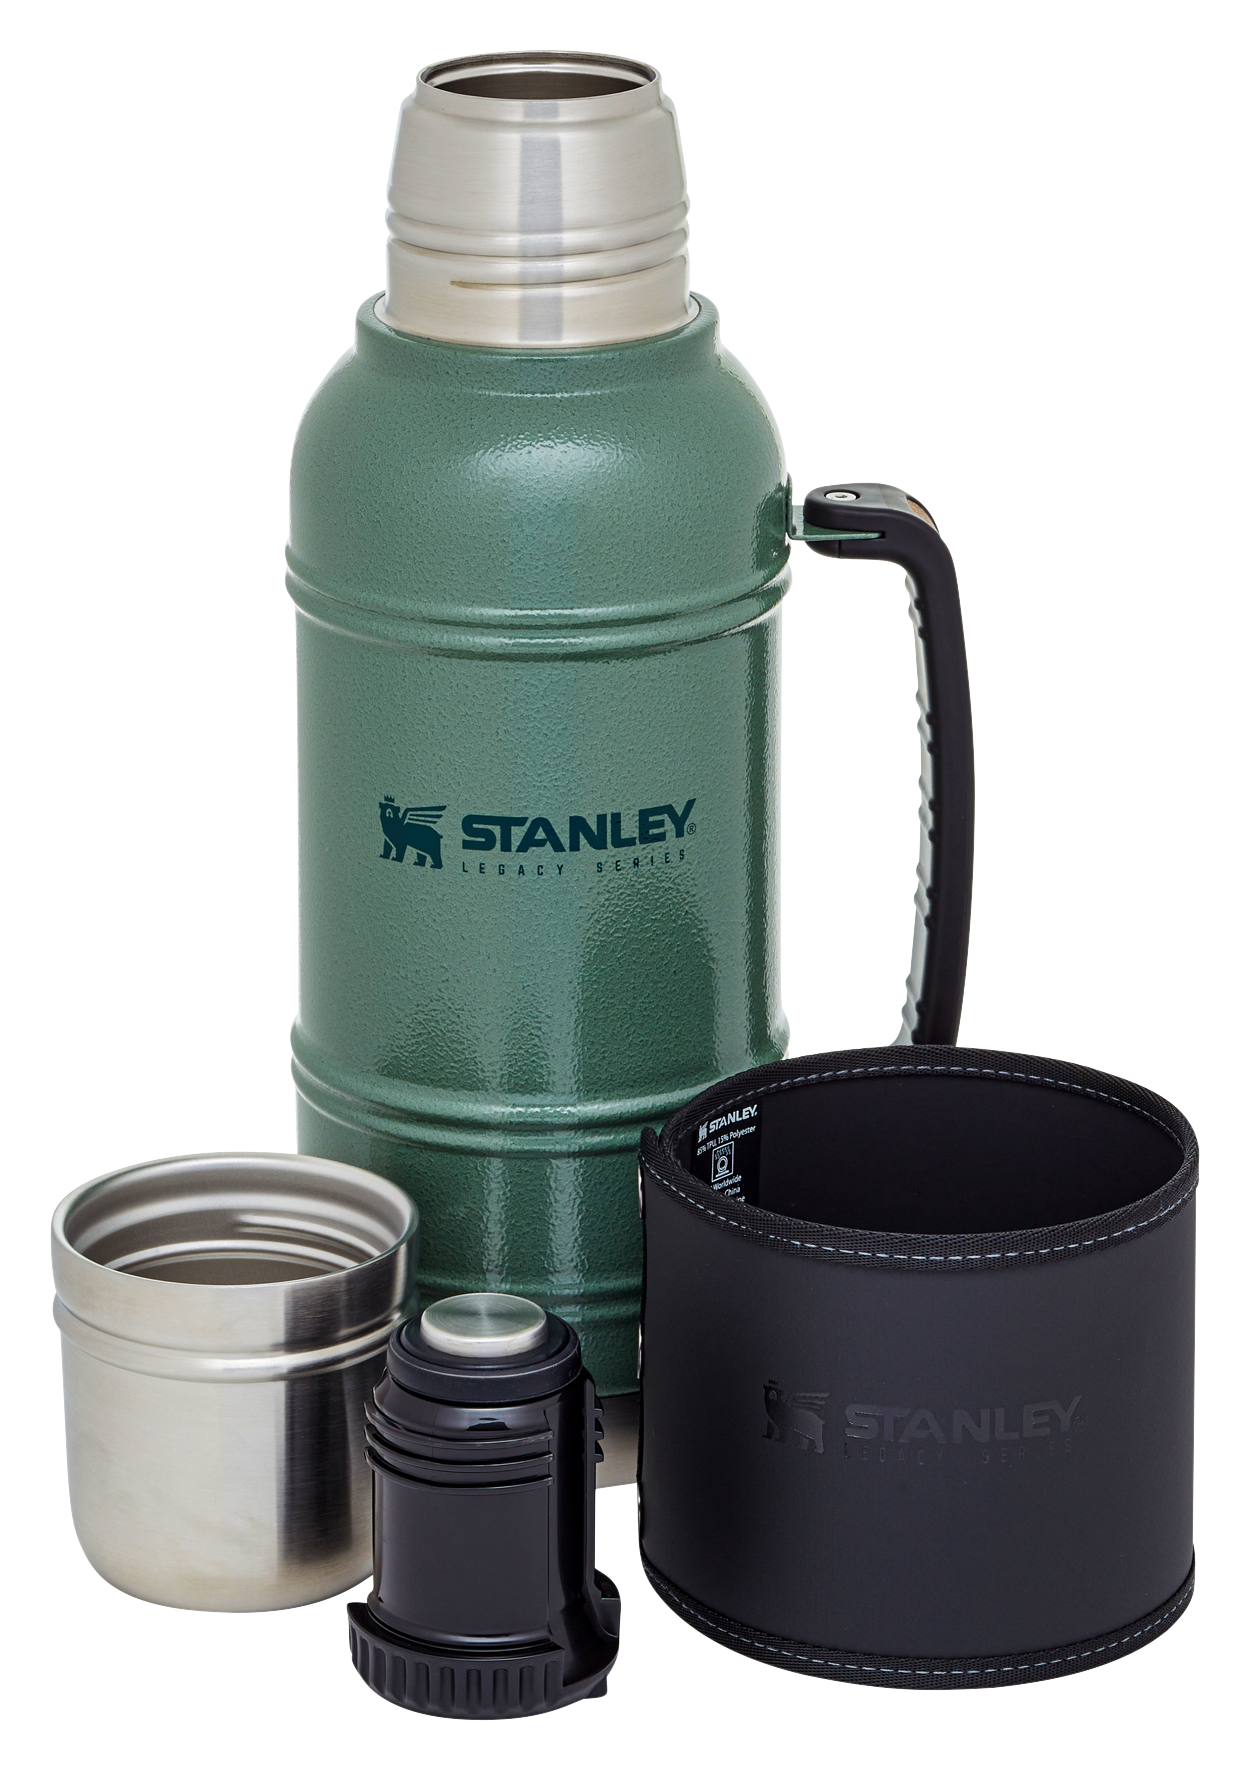 Stanley® Trigger-action Travel Mug - 16 Oz.